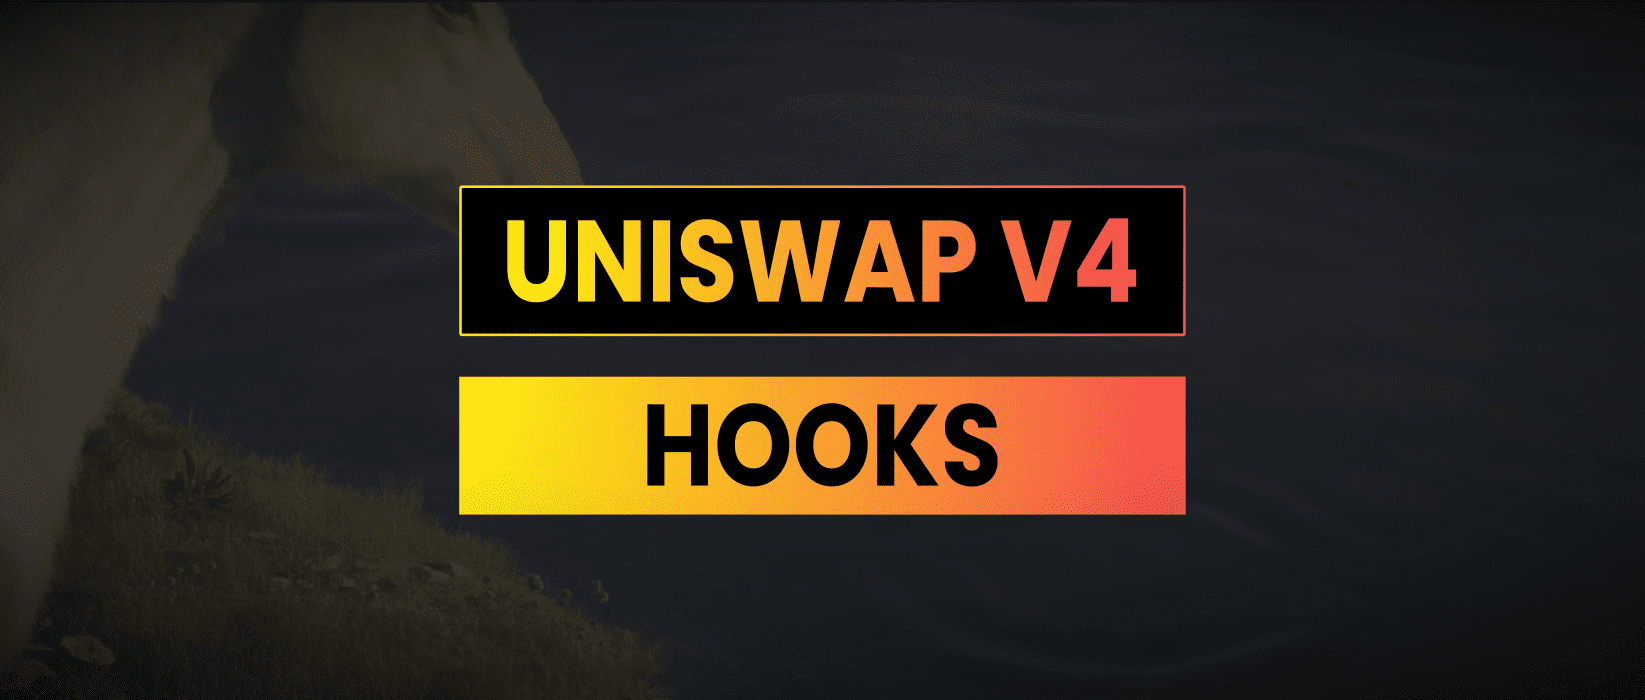 Uniswap v4 Hooks